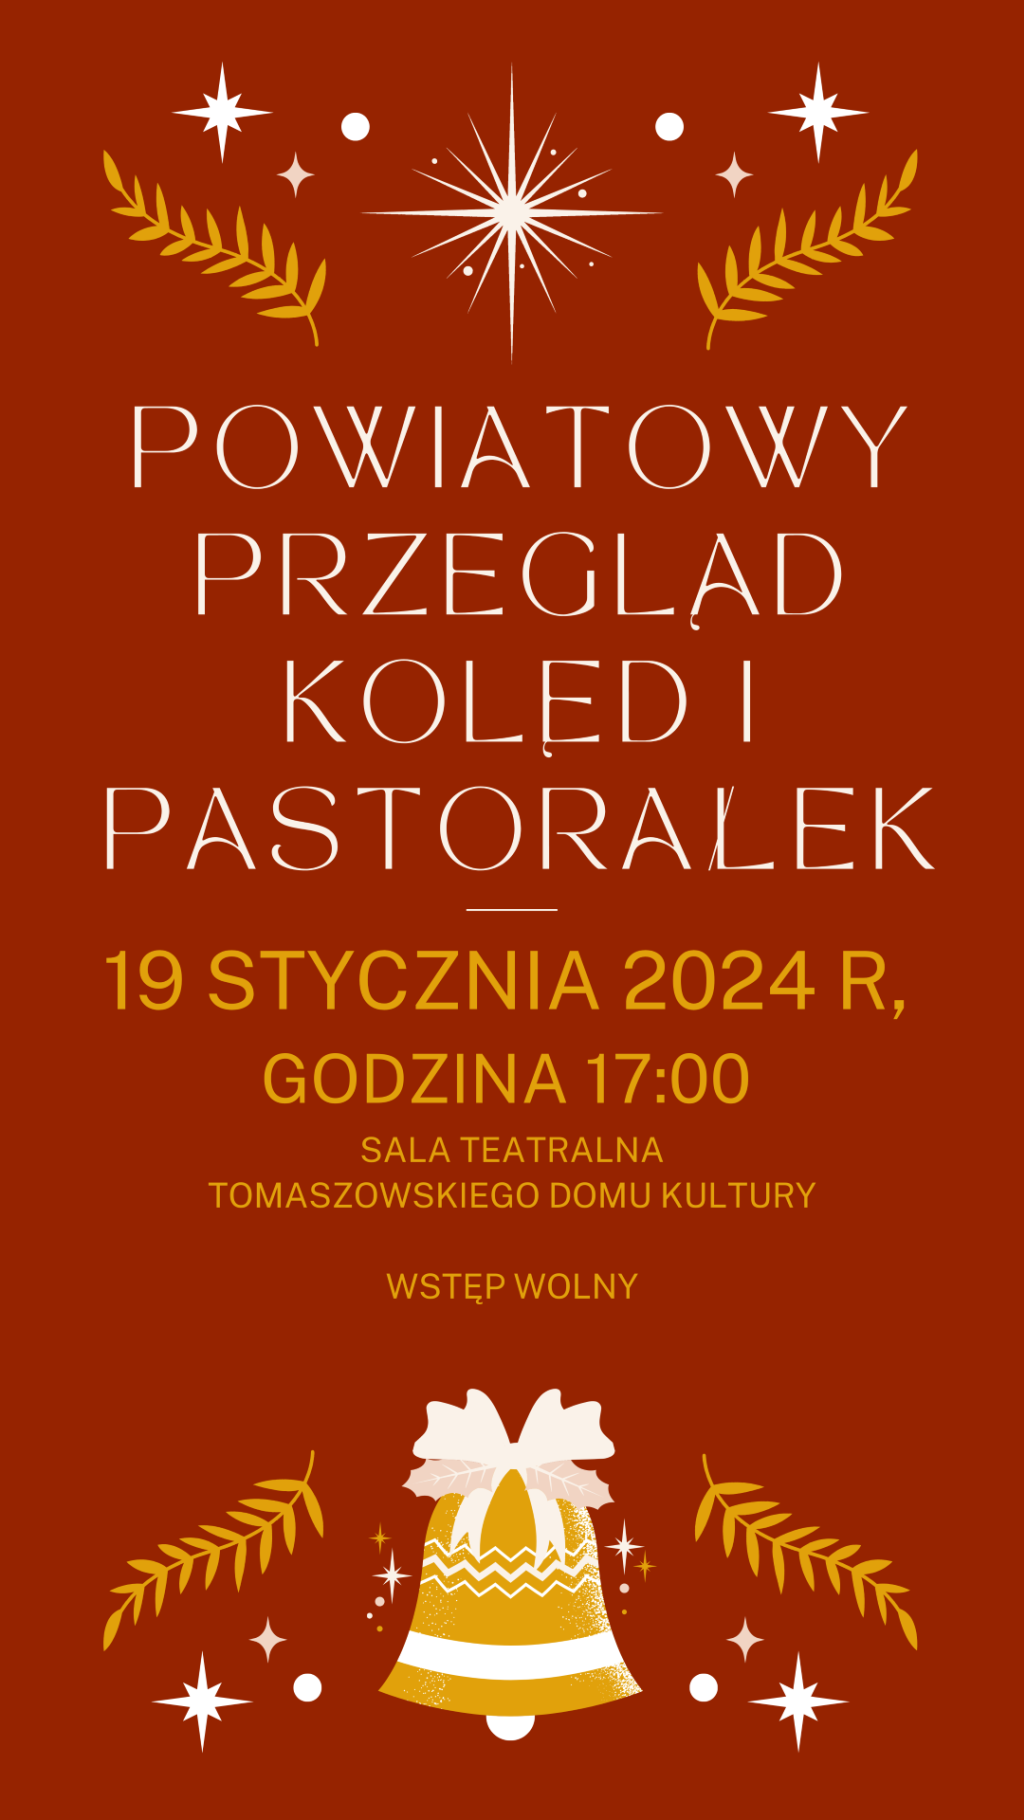 Powiatowy Przegląd Kolęd i Pastorałek 2024